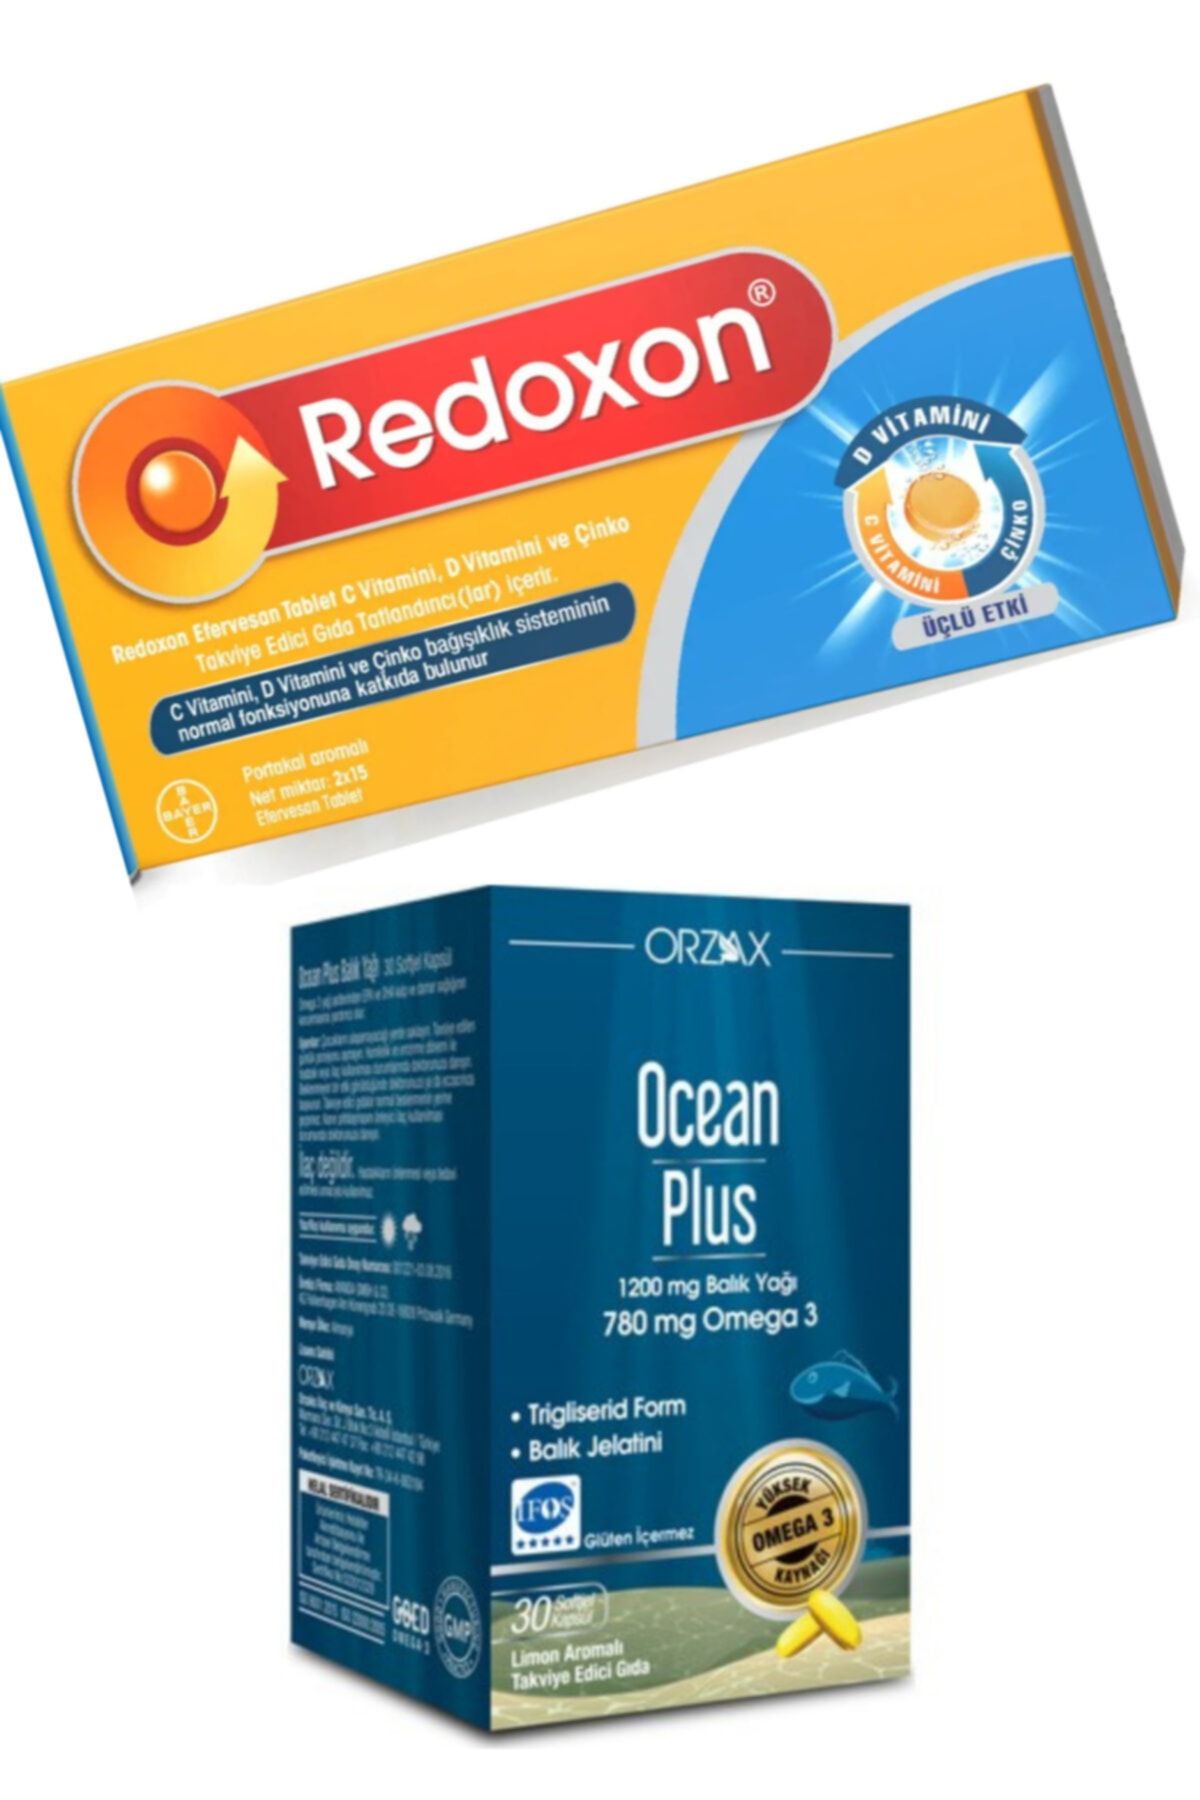 Ocean Plus 1200mg Balık Yağı 30 Kapsül Ve Redoxon 3lü Etki C Vitamini D Vitamini Çinko 30 Efervesan Tablet